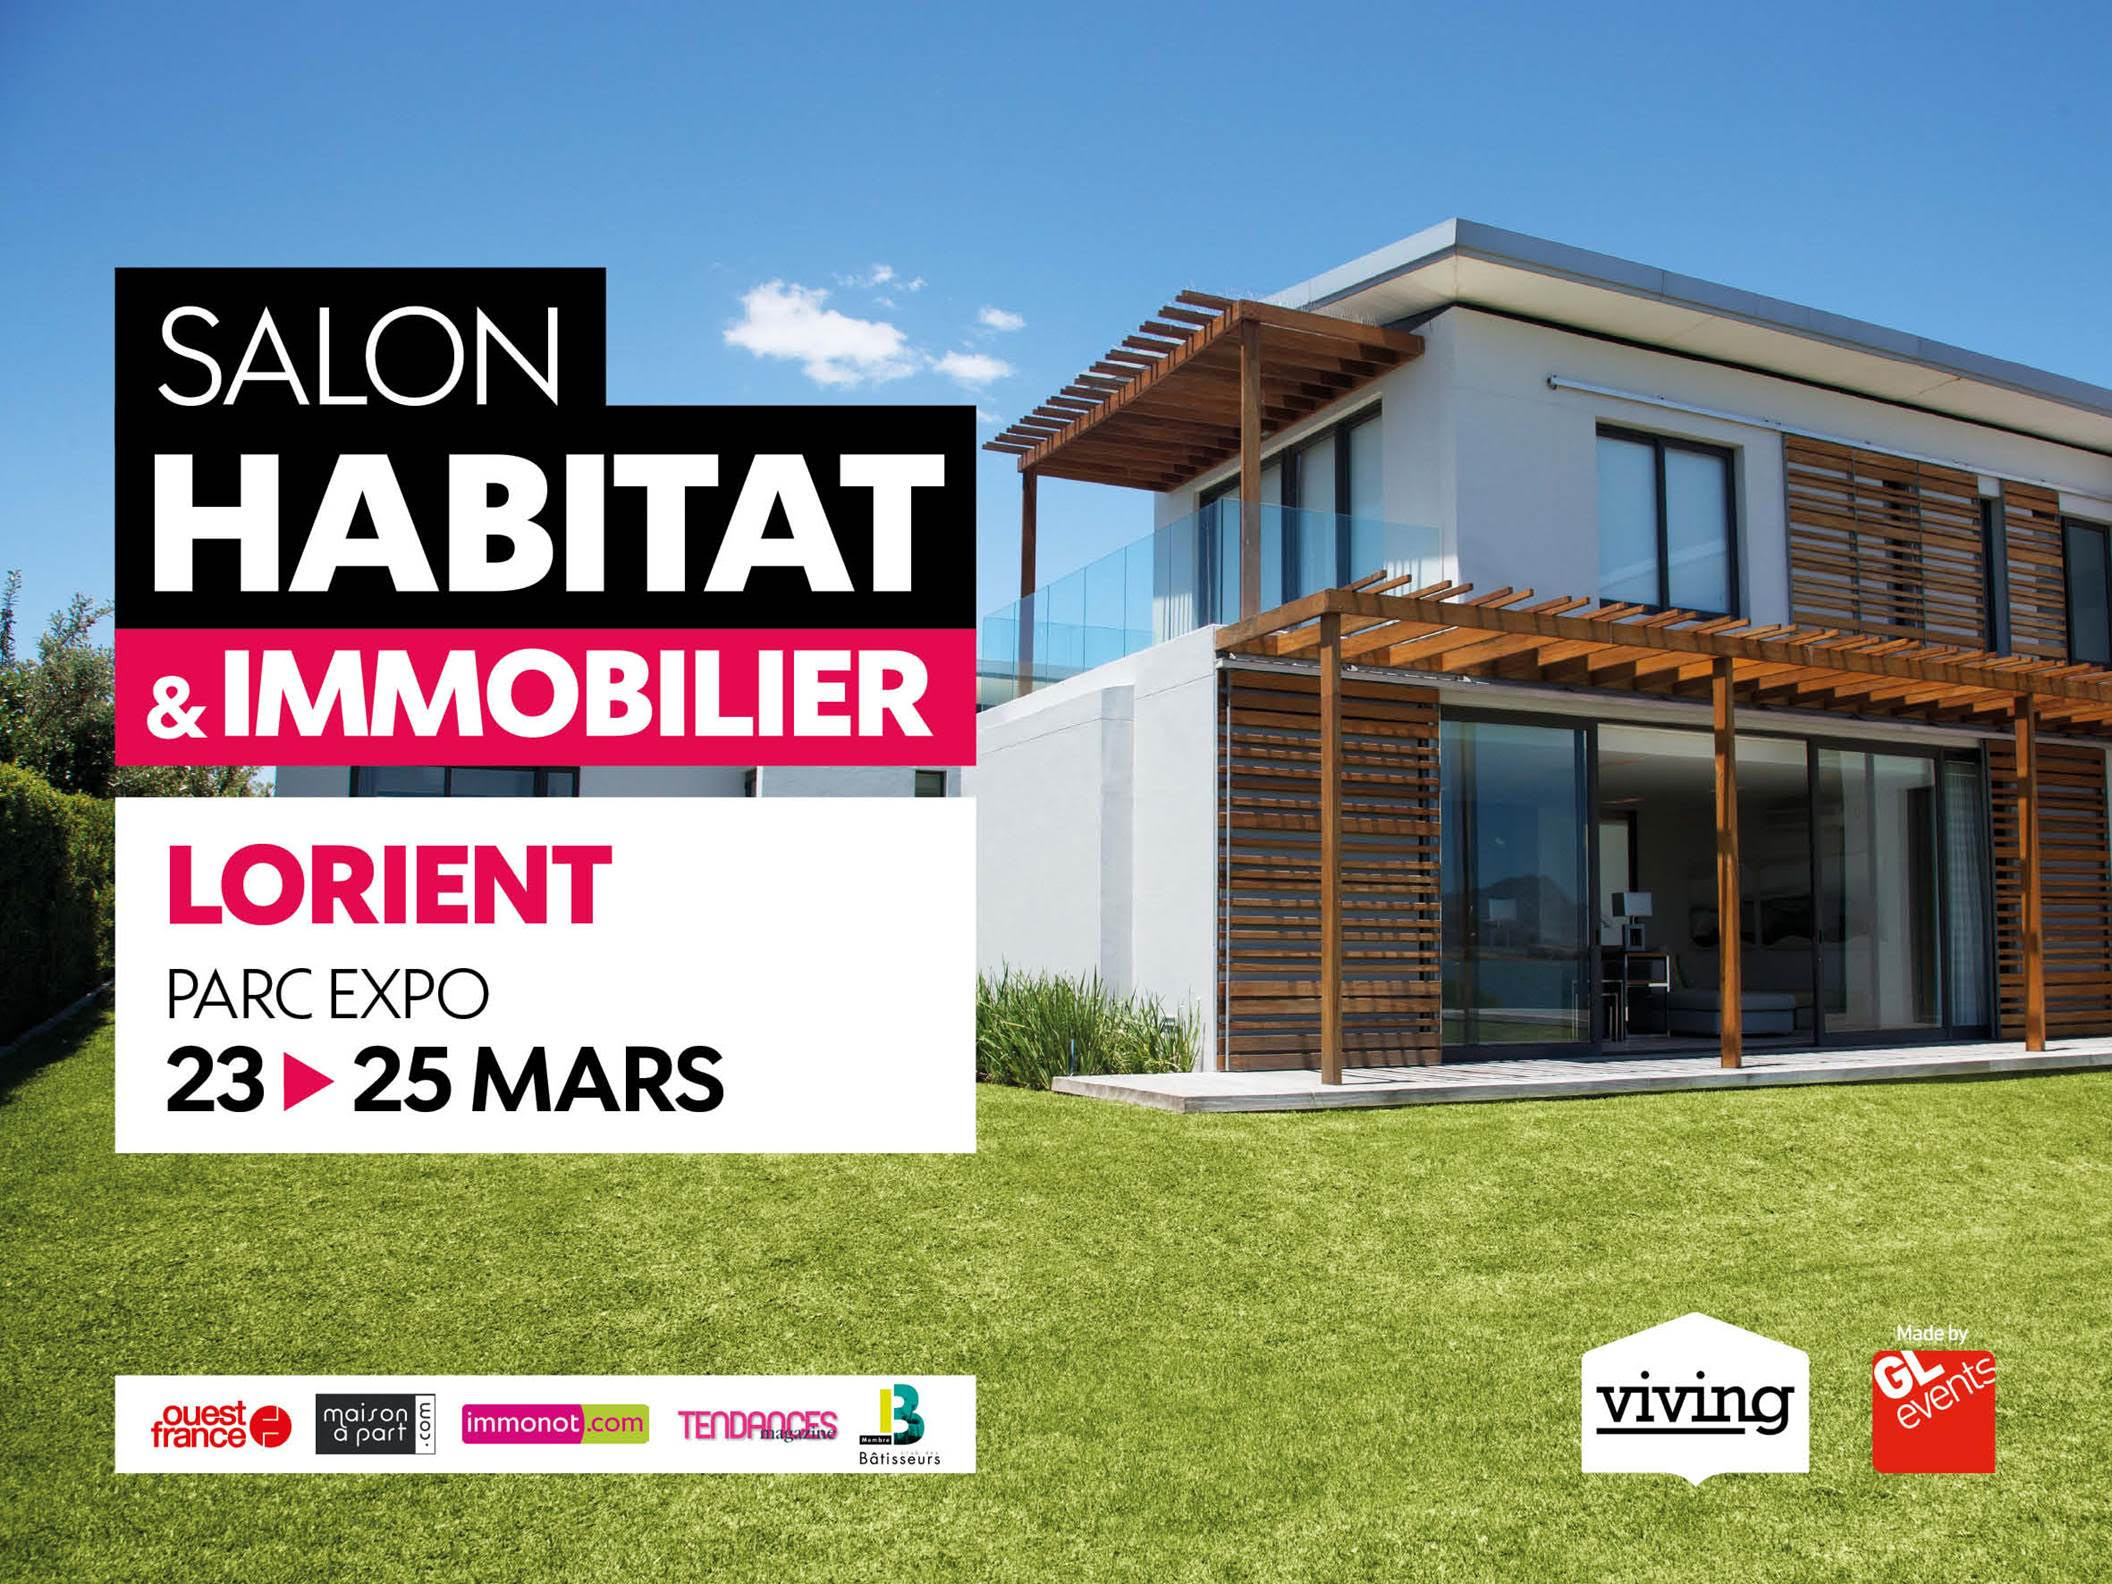 Salon Habitat et Immobilier Lorient 2019